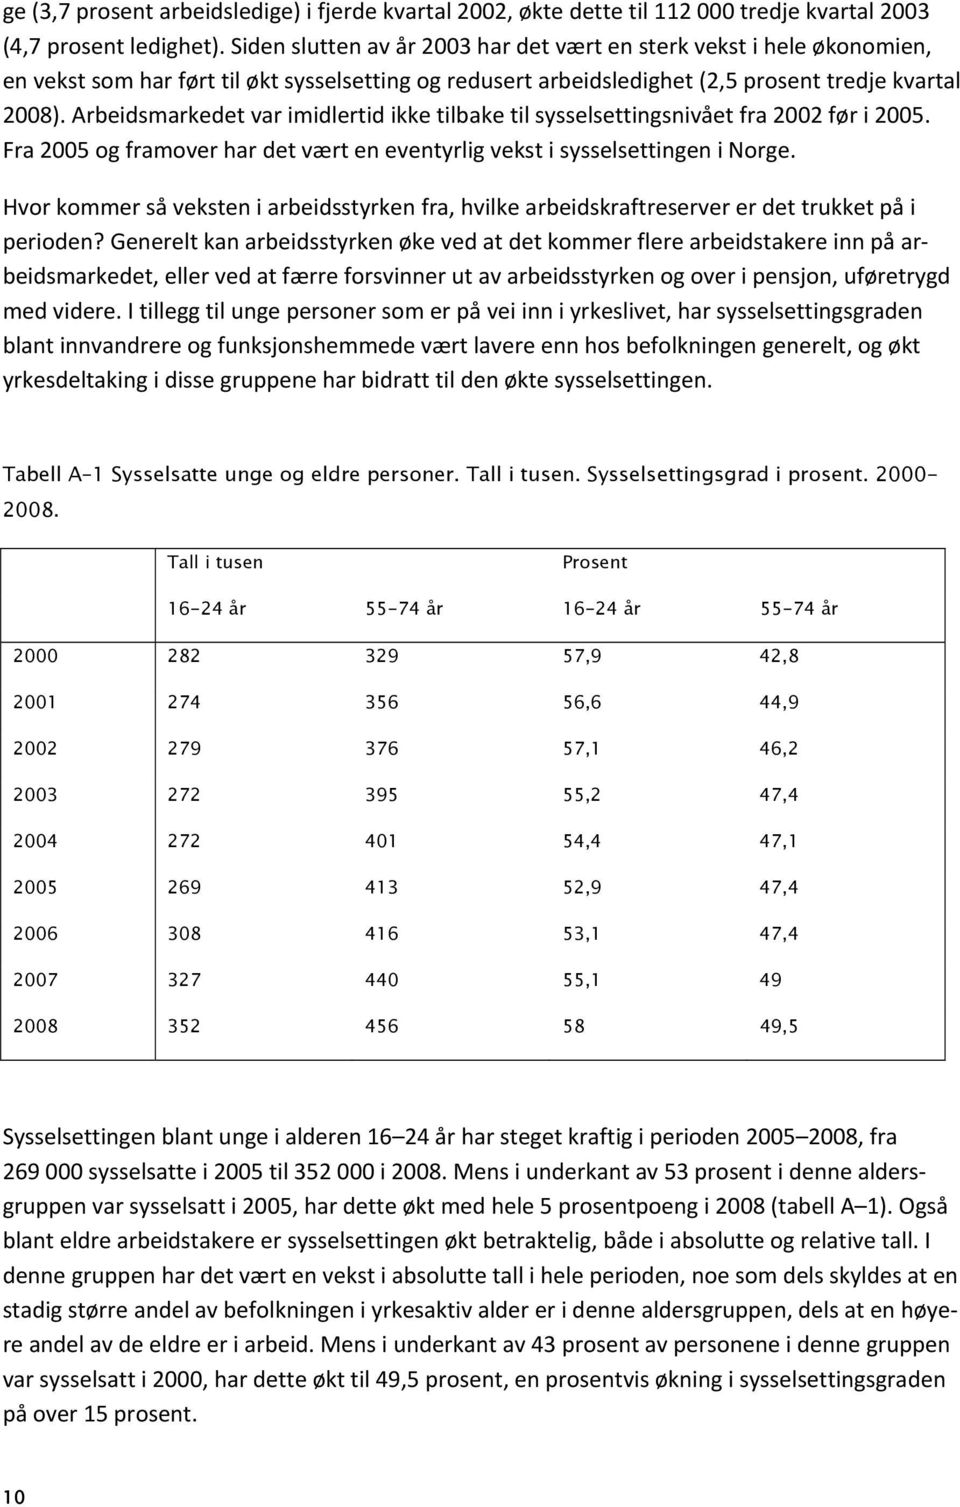 Arbeidsmarkedet var imidlertid ikke tilbake til sysselsettingsnivået fra 2002 før i 2005. Fra 2005 og framover har det vært en eventyrlig vekst i sysselsettingen i Norge.